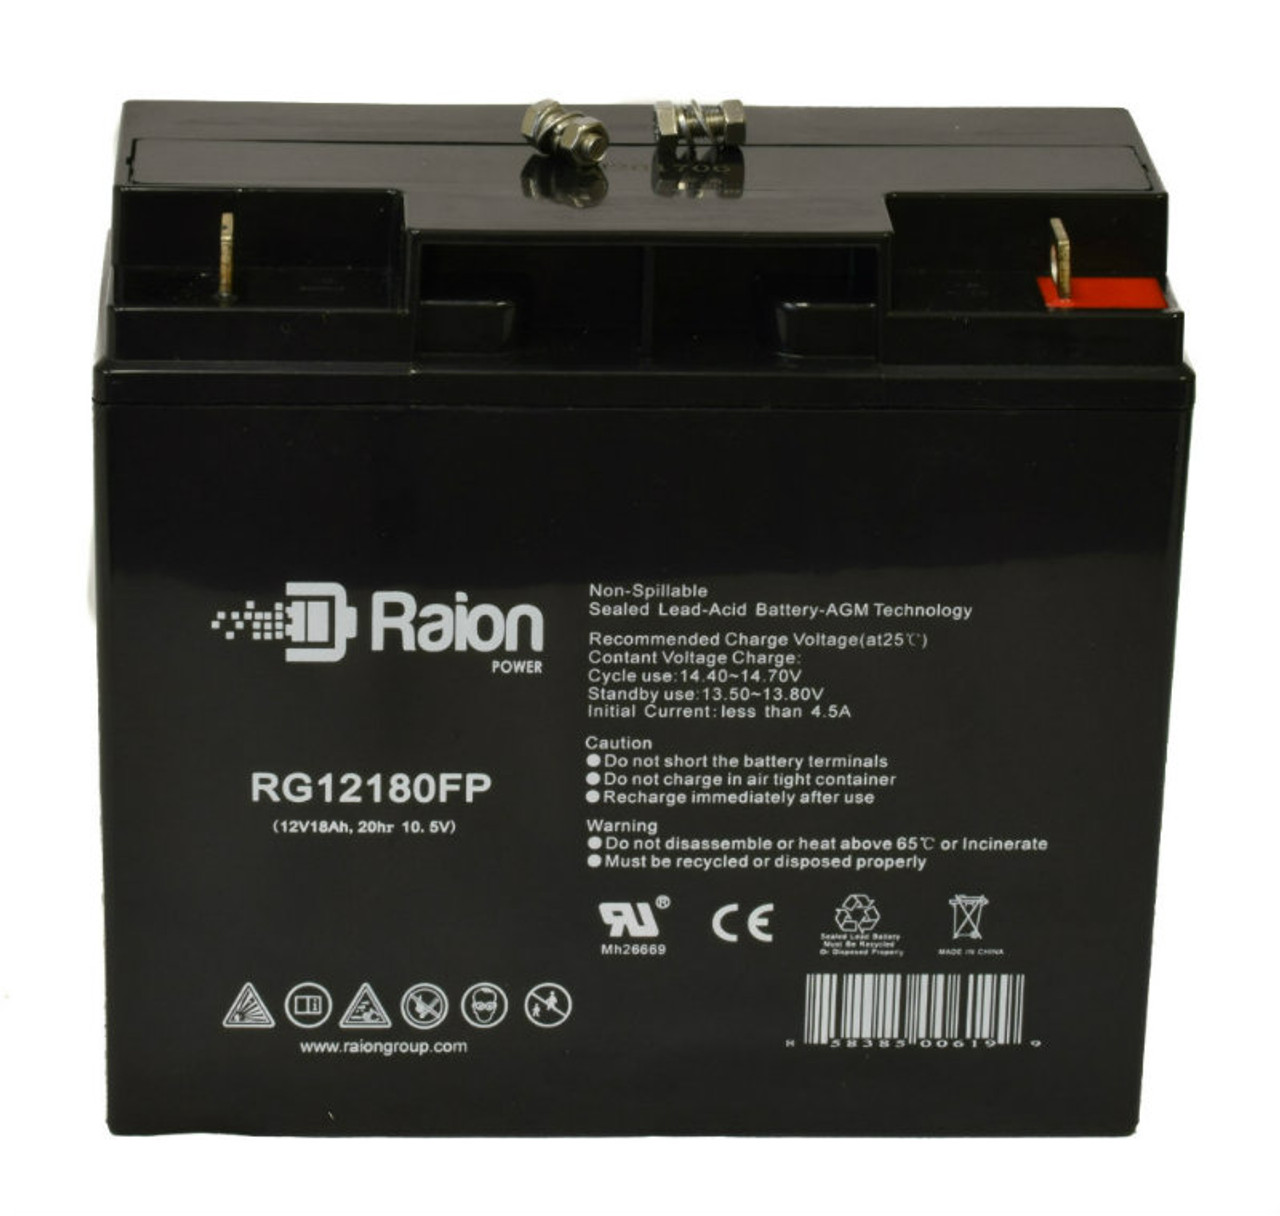 Raion Power RG12180FP 12V 18Ah Lead Acid Battery for MAQUET Alphamaxx 1133.12 OR Table